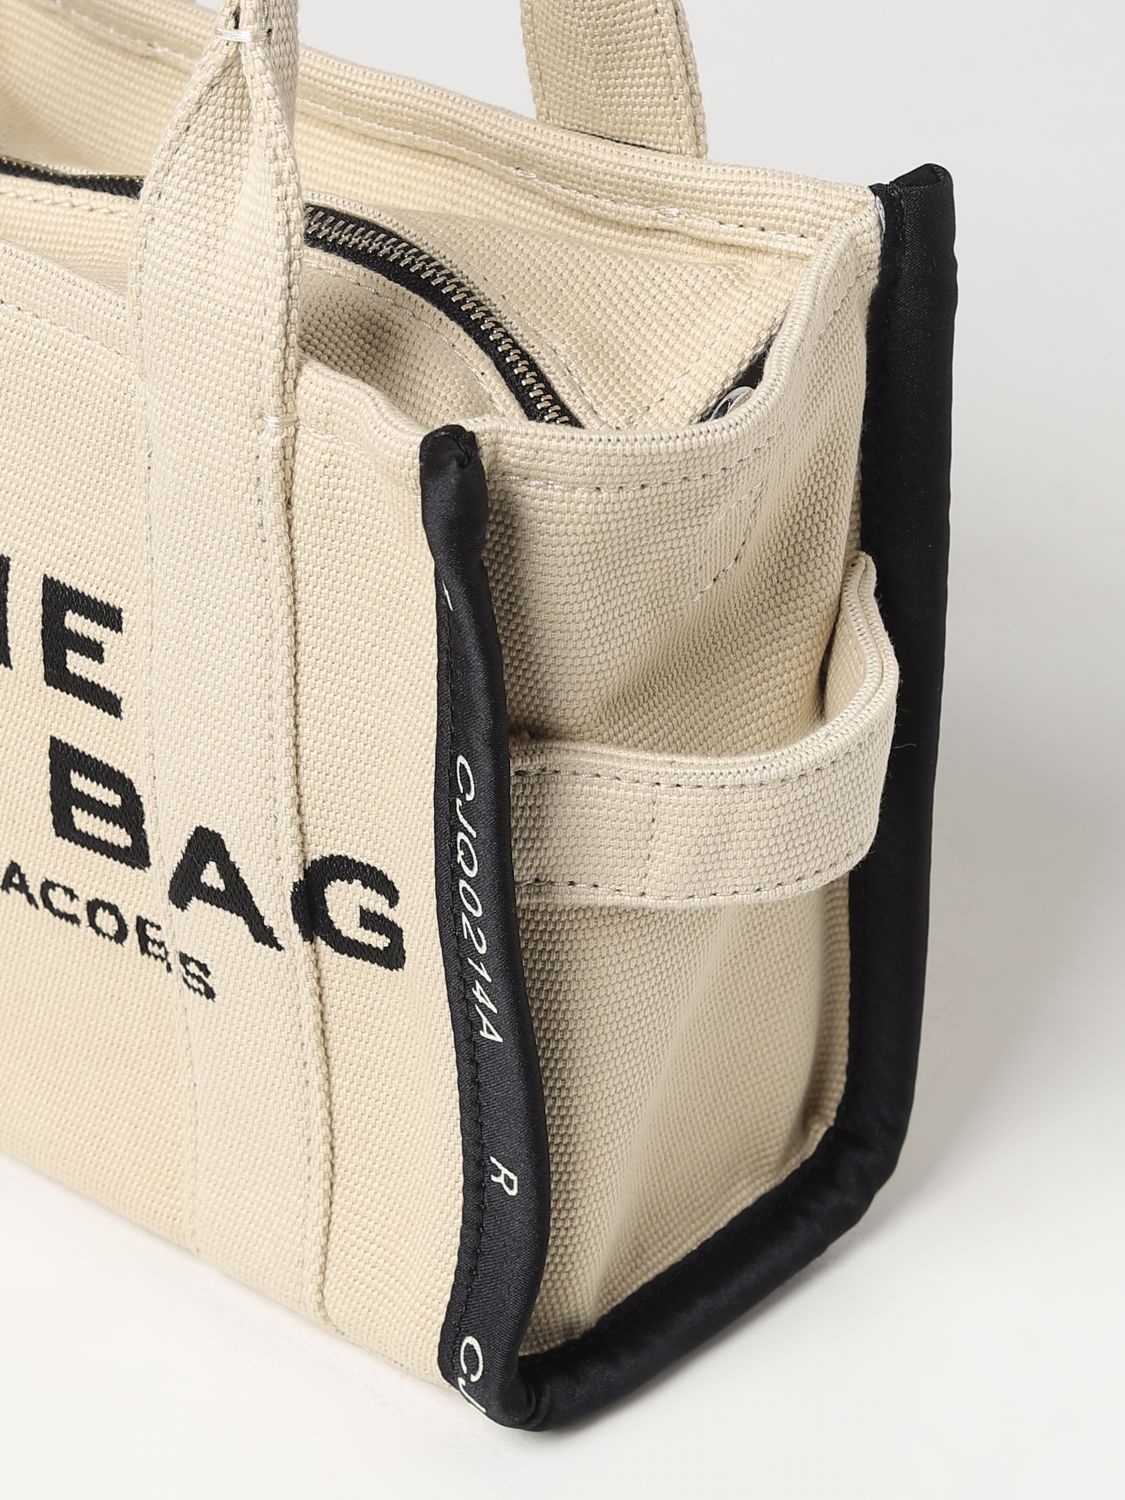 Marc Jacobs handbag for woman - 3